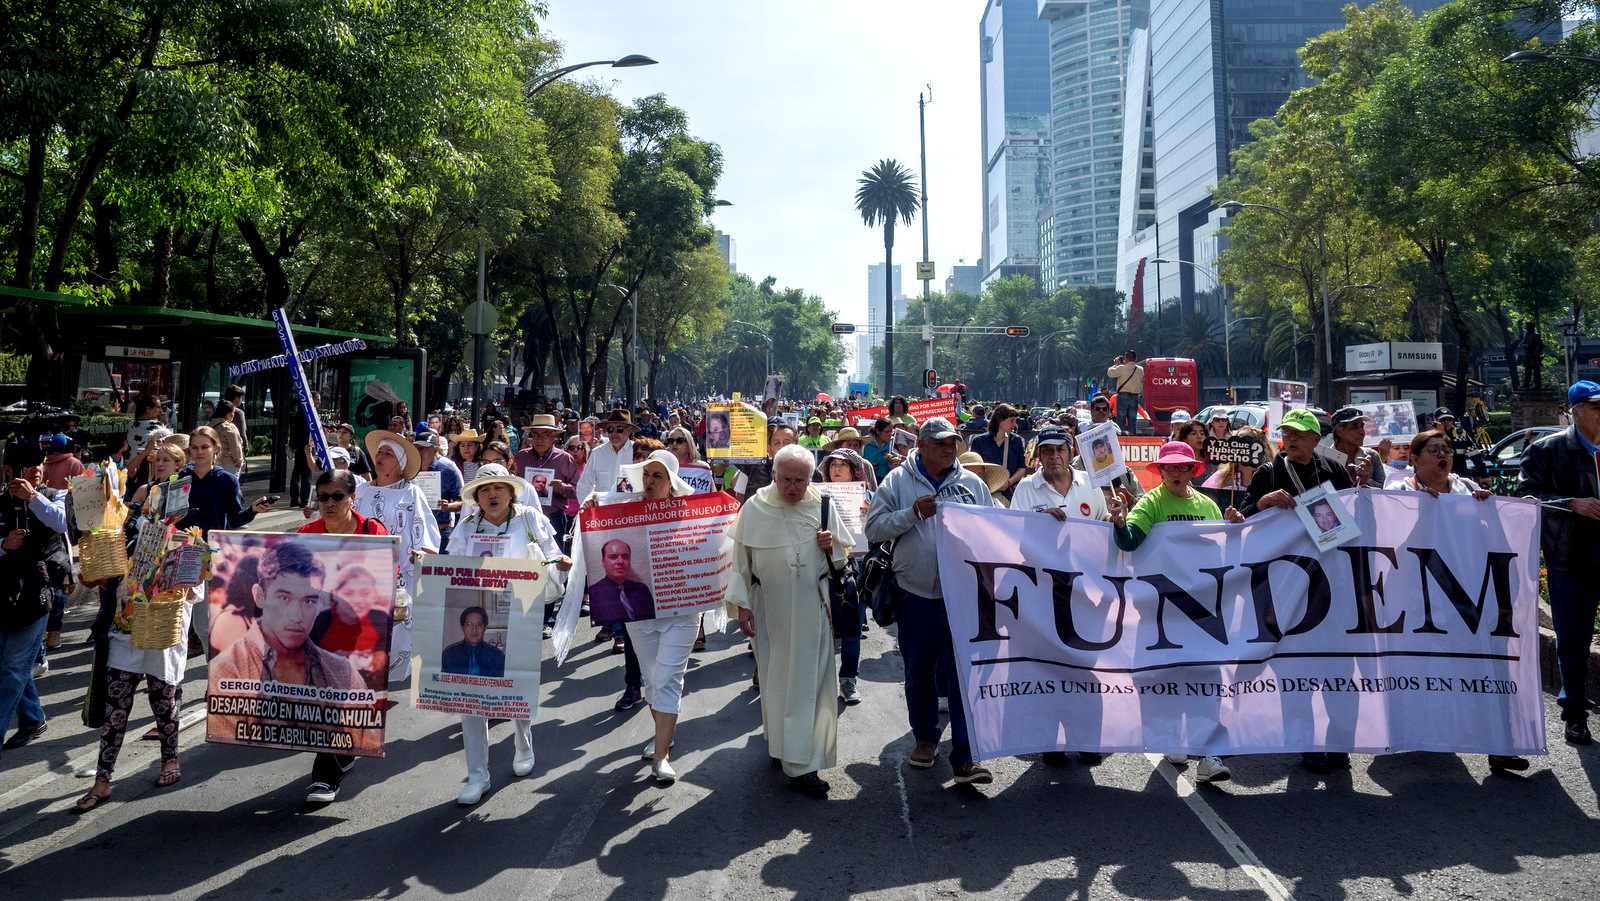 Miles marchan por el Paseo de la Reforma para exigir justicia para los niños desaparecidos por la fuerza, Ciudad de México, 10 de mayo de 2018 (Foto: José Luis Granados Ceja)